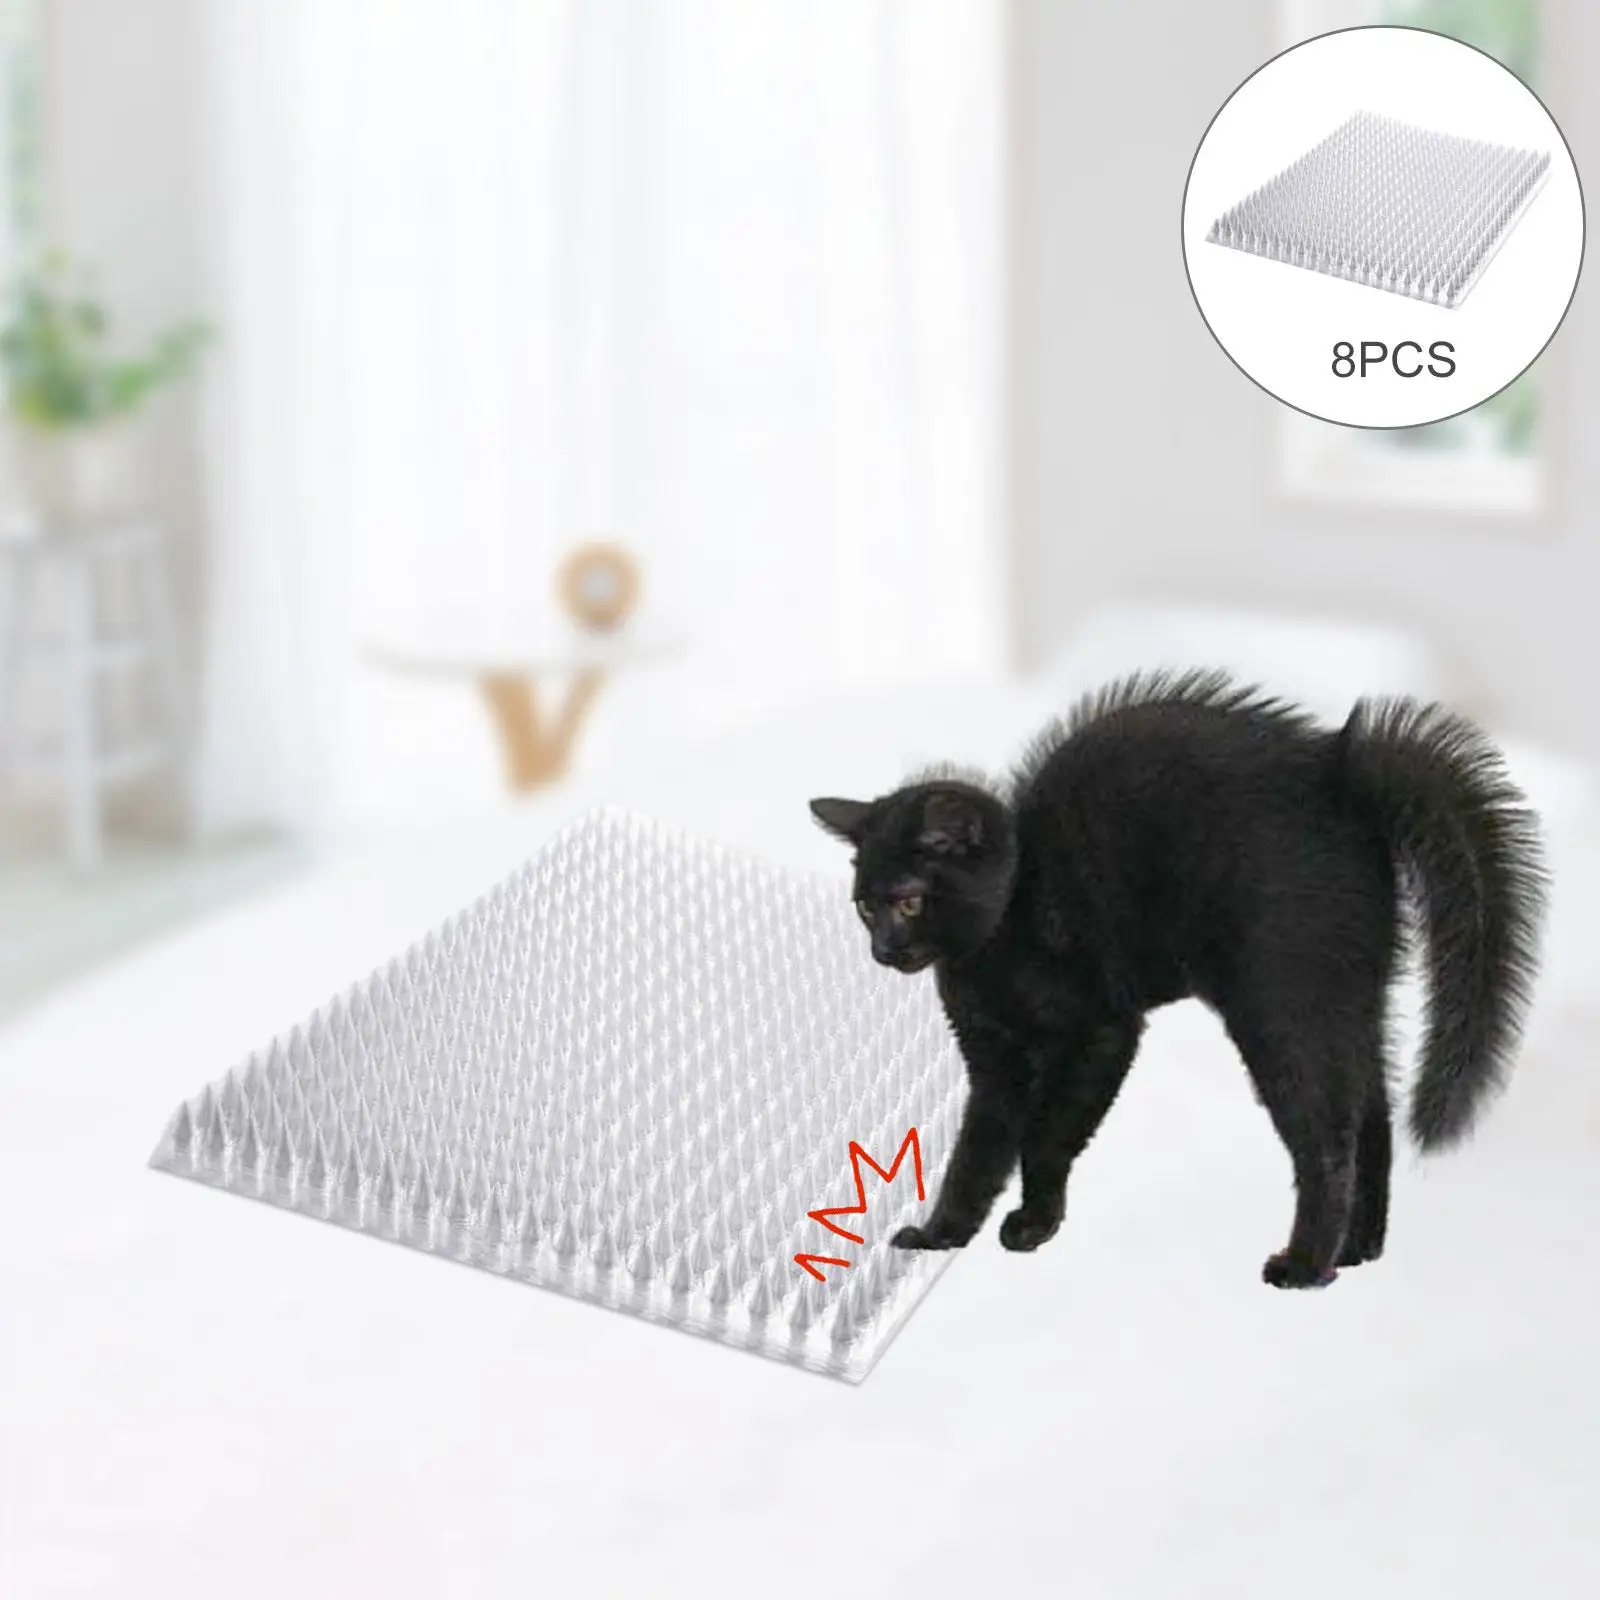 Outdoor Cat Scat Mat Anti-cat Prickle Strips Indoor Dog Kitten Deterrent Window Sofa Bed Repellent Animal Scarer Digging Stopper